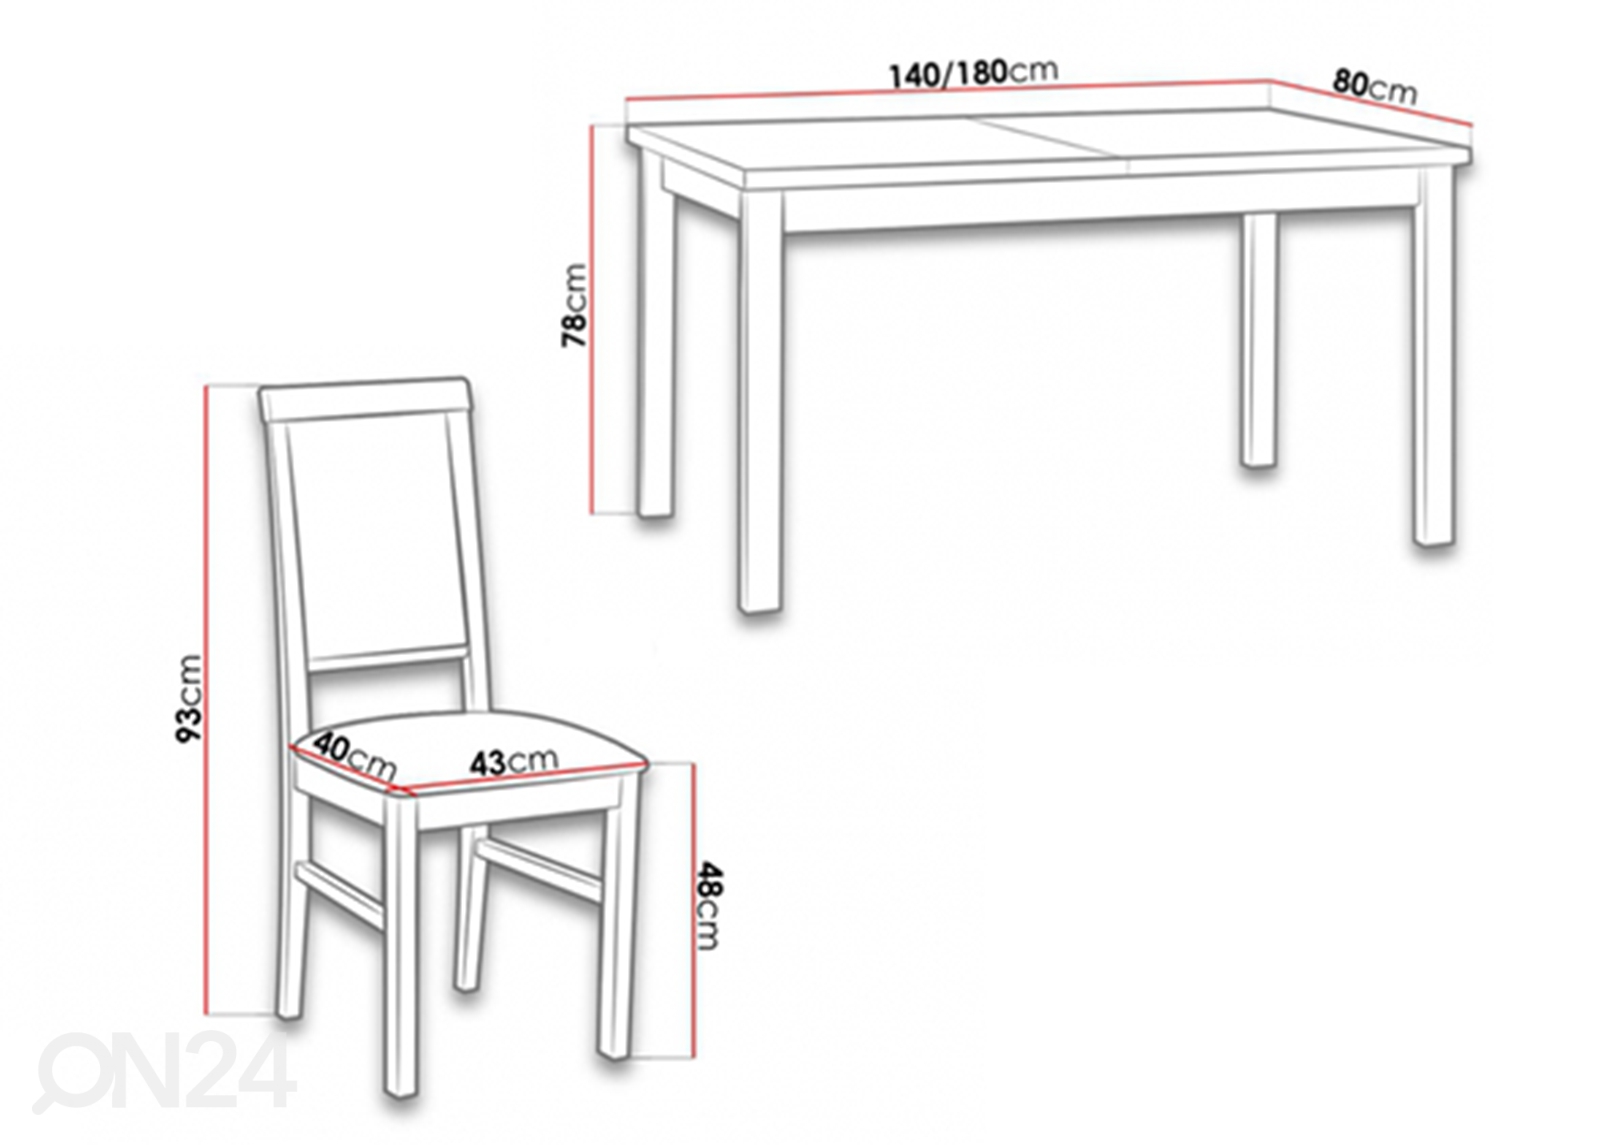 Удлиняющийся обеденный стол 80x140-180 cm + 6 стульев увеличить размеры